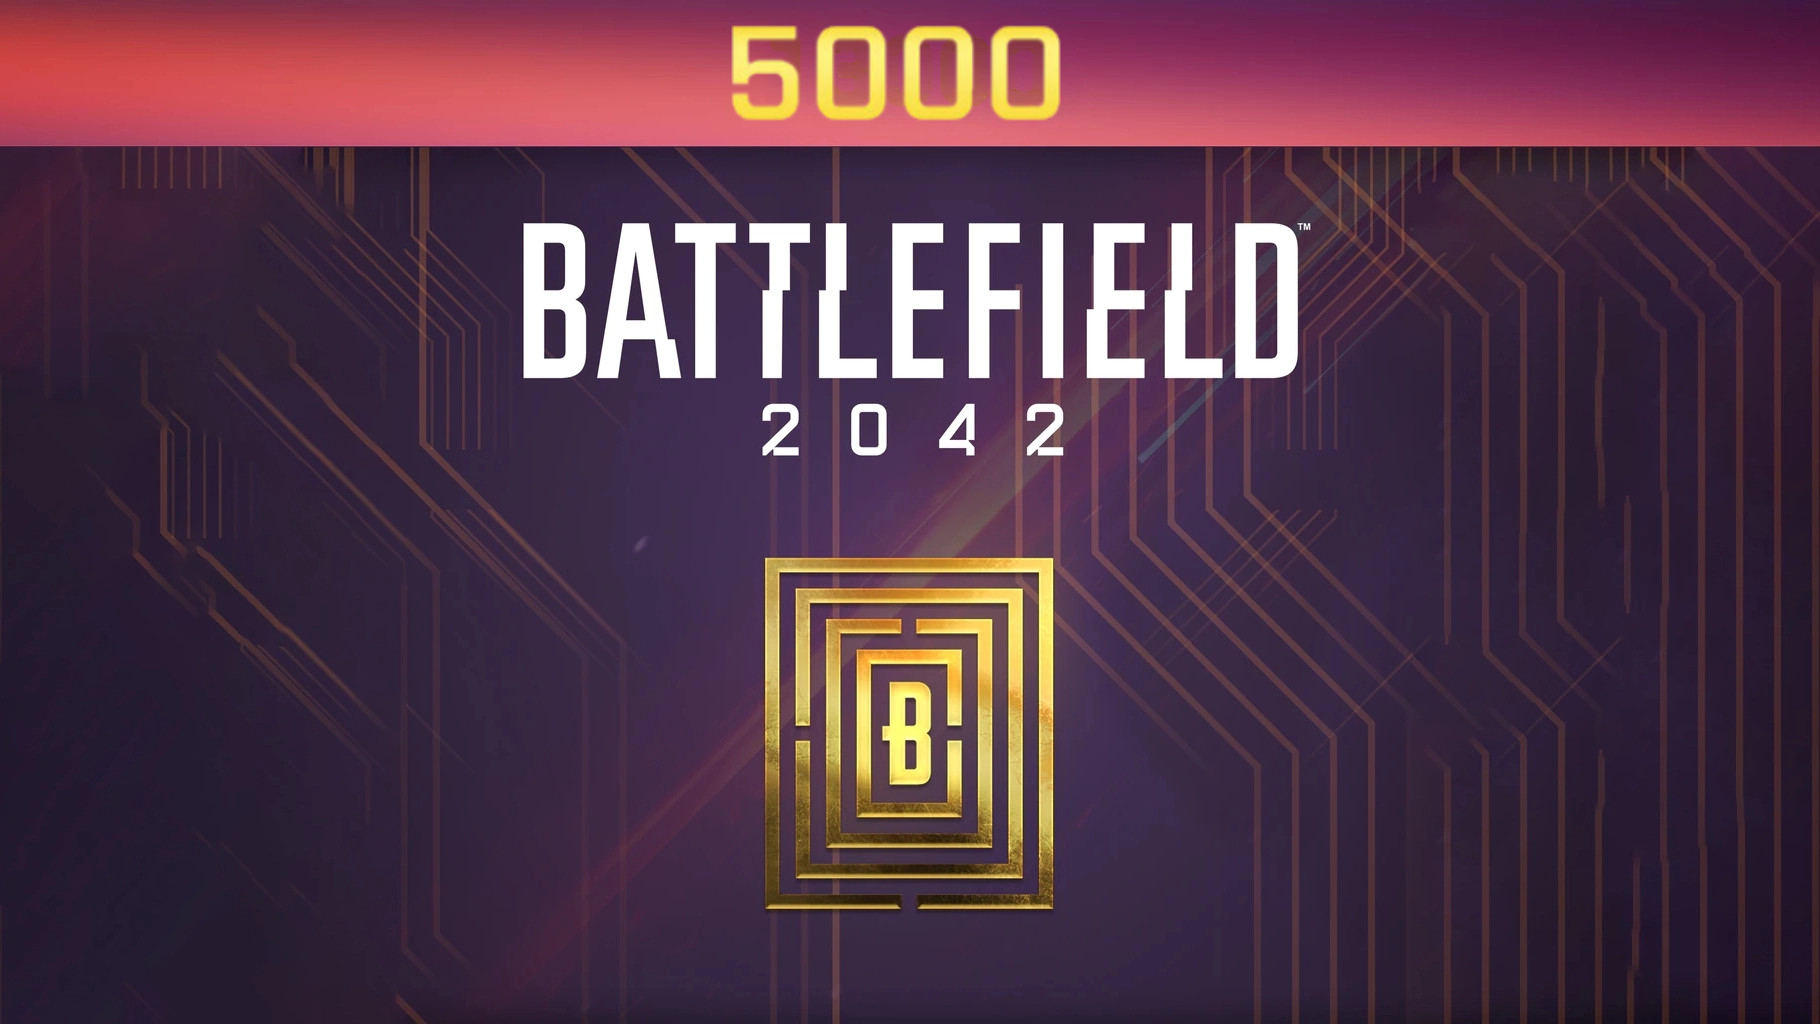 Battlefield 2042 - 5000 BFC Balance XBOX One / Xbox Series X|S CD Key 40.67 usd